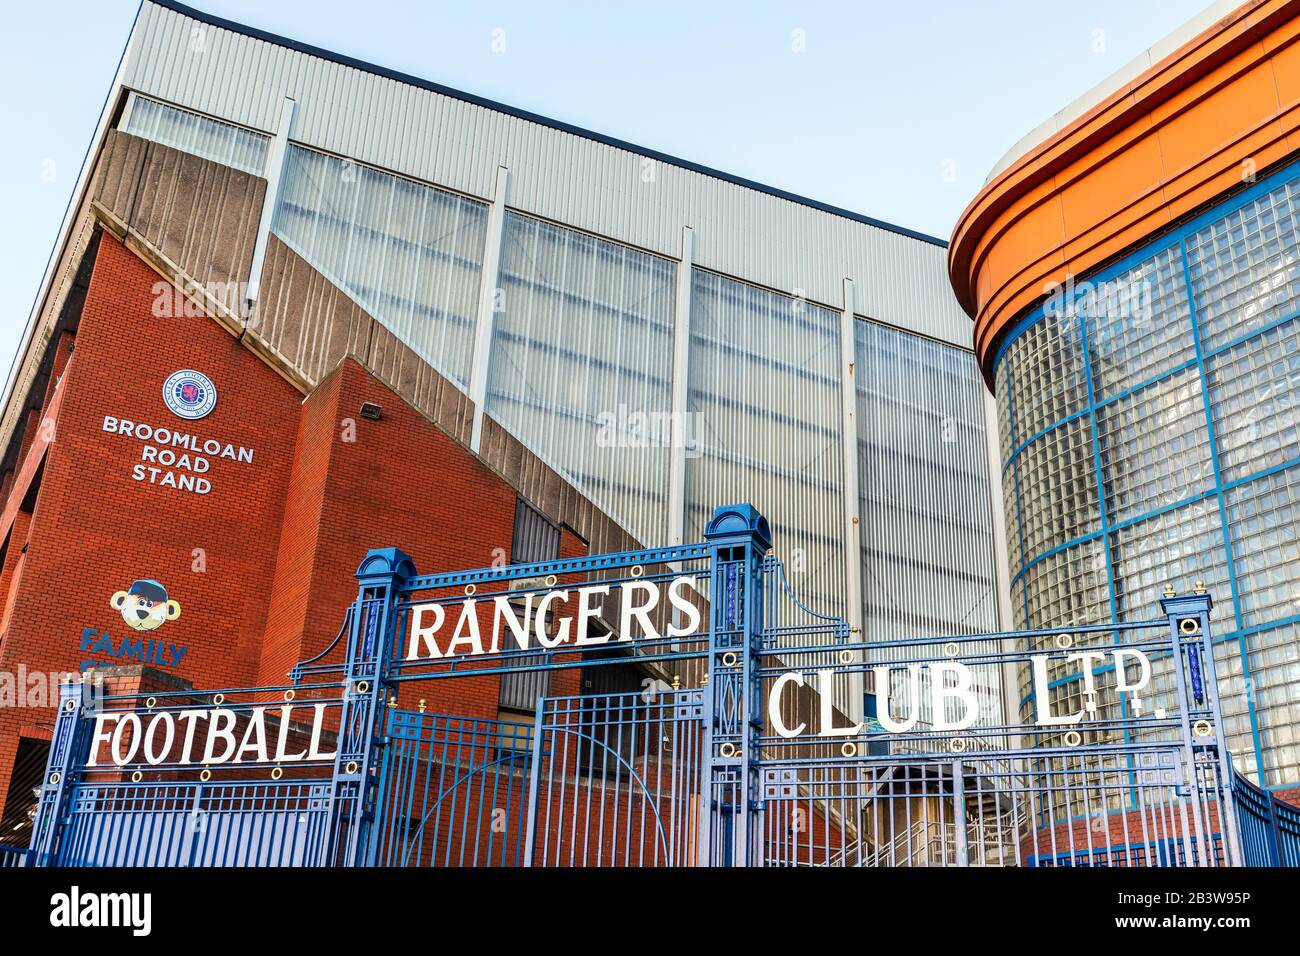 Ingresso allo stadio Ibrox, sede del Rangers Football Club, Govan, Glasgow, Scozia, Regno Unito Foto Stock